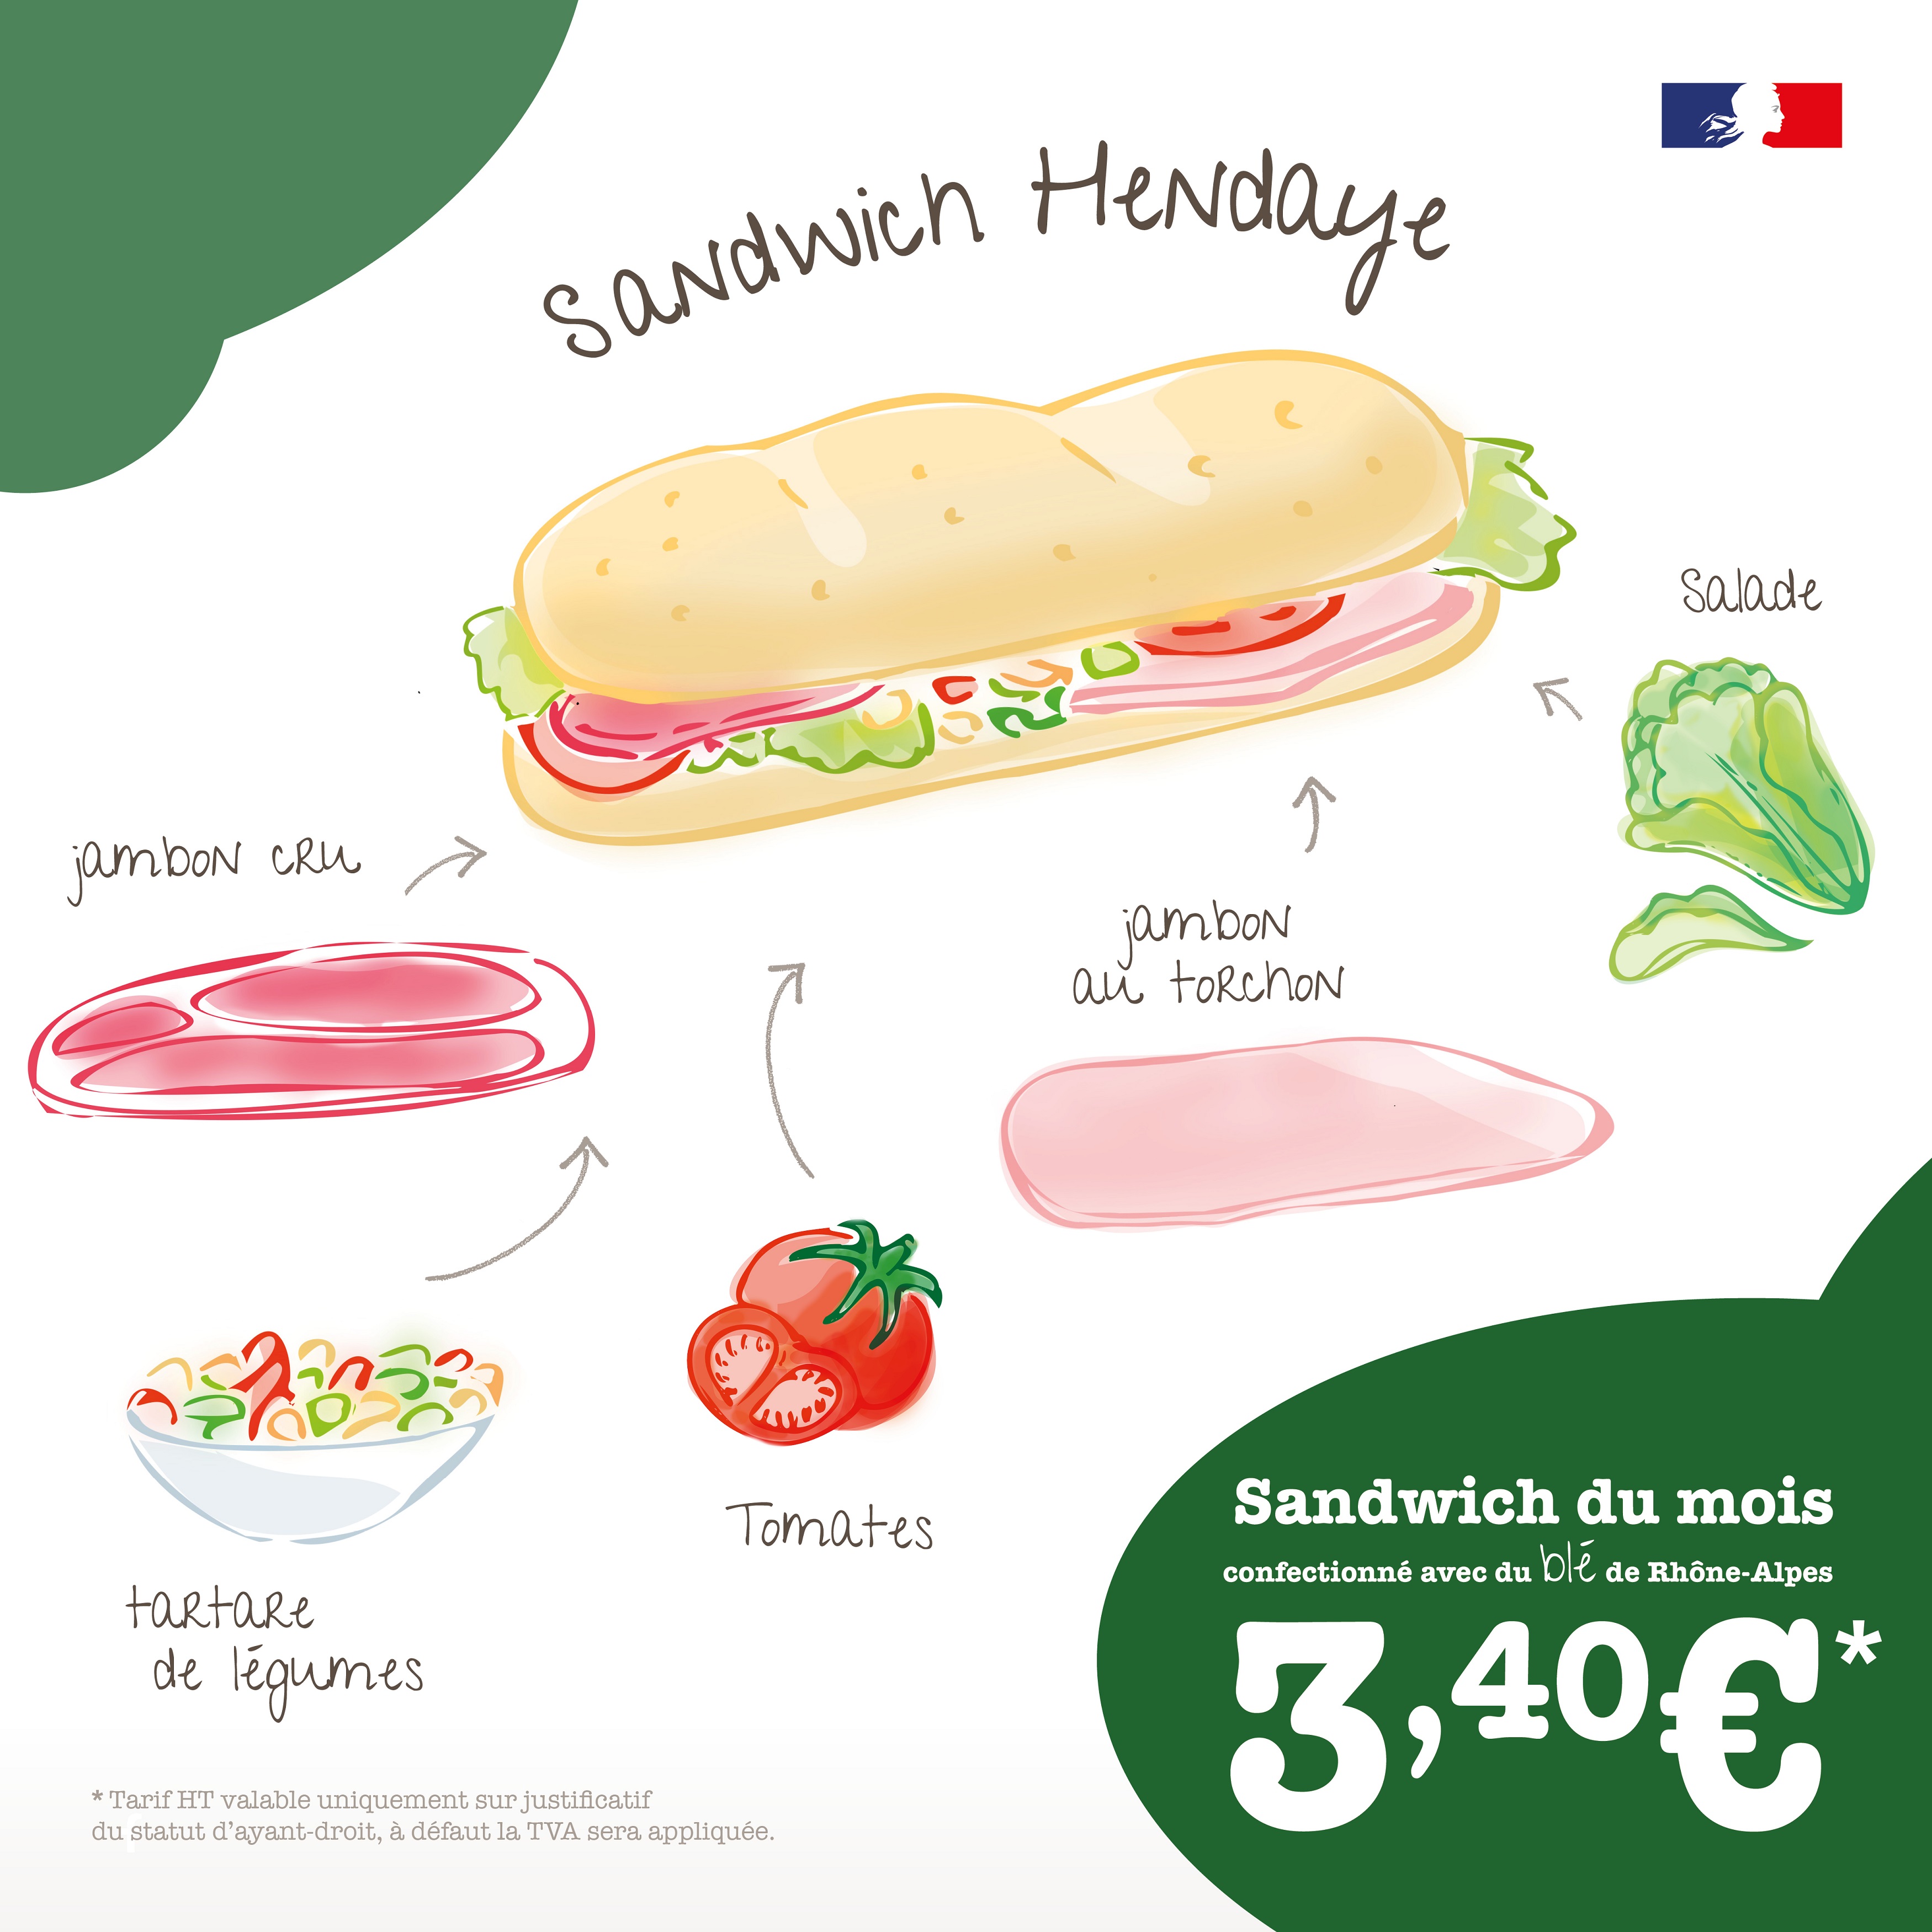 Sandwich Hendaye Reseaux 1080x1080 1